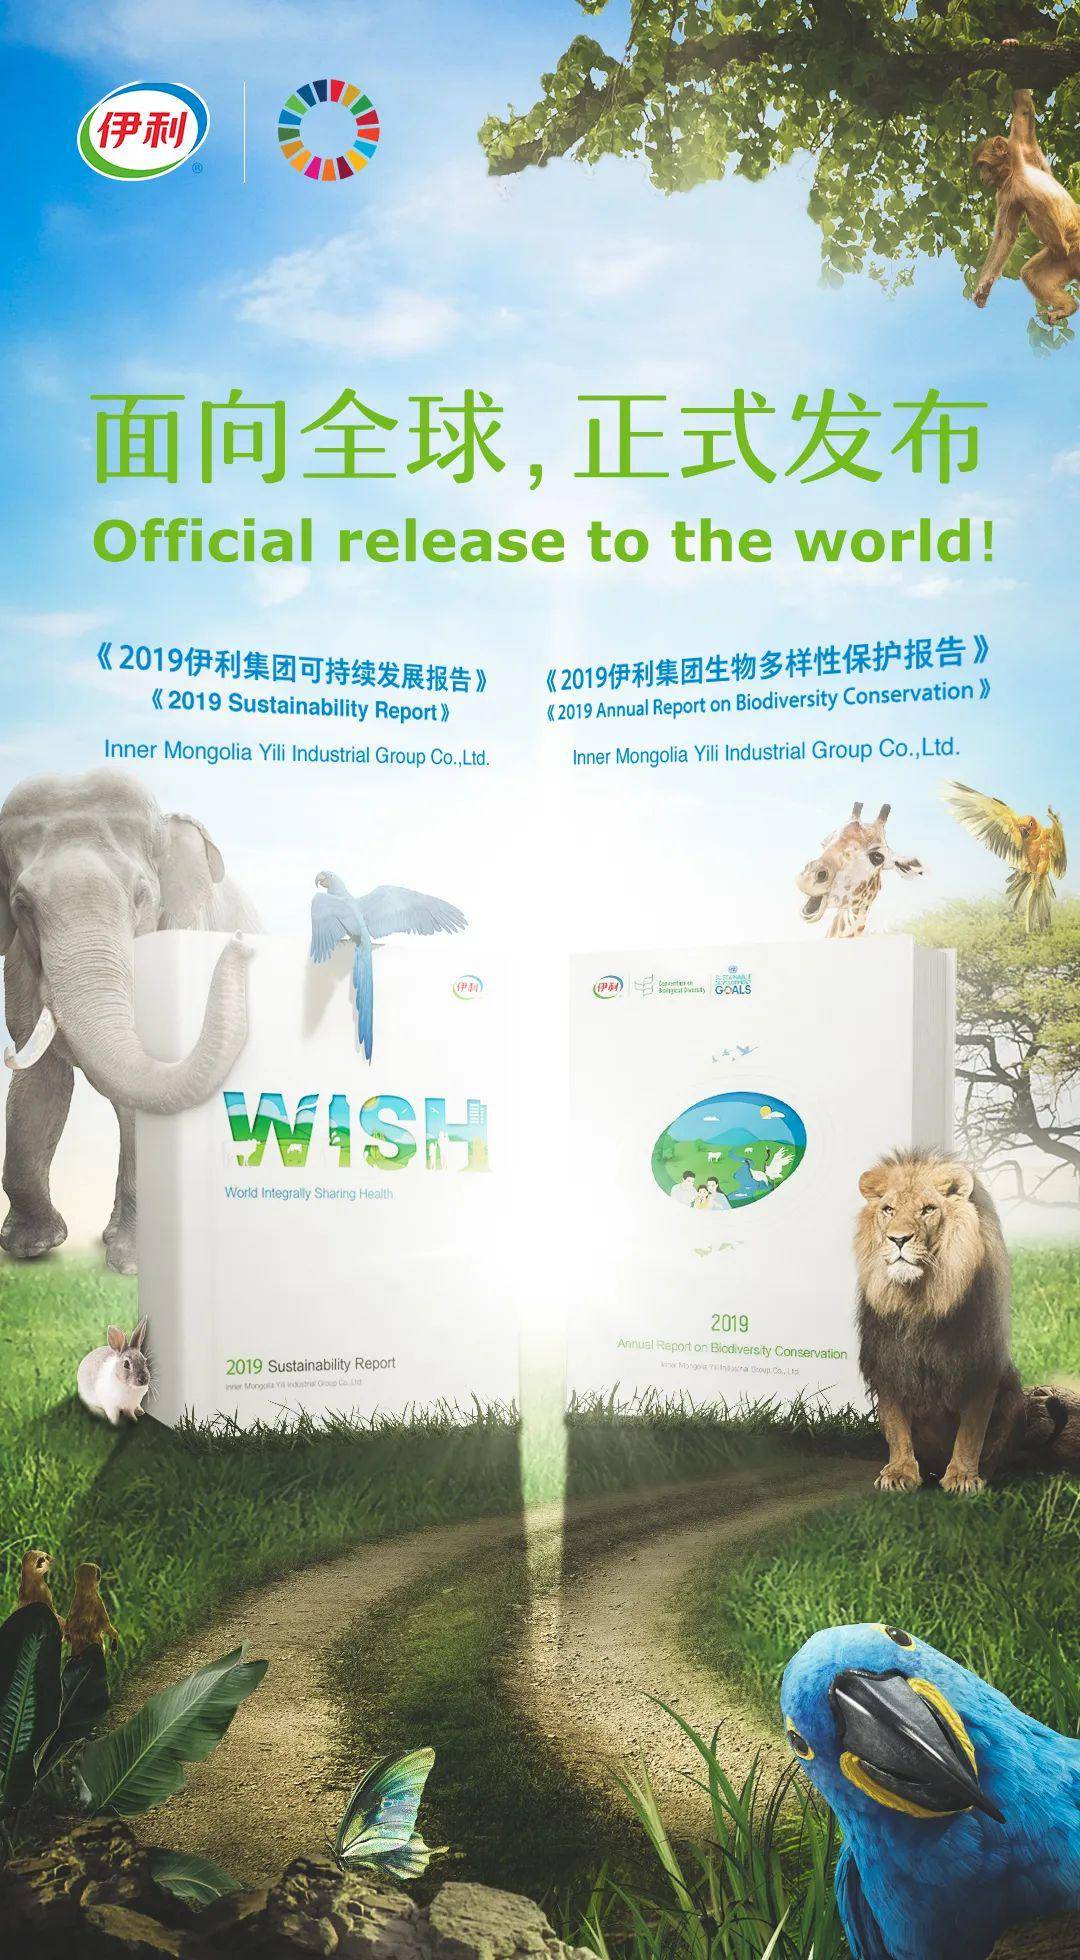 中国驻肯尼亚大使馆,肯尼亚野生动物管理局联合发起动物保护公益活动